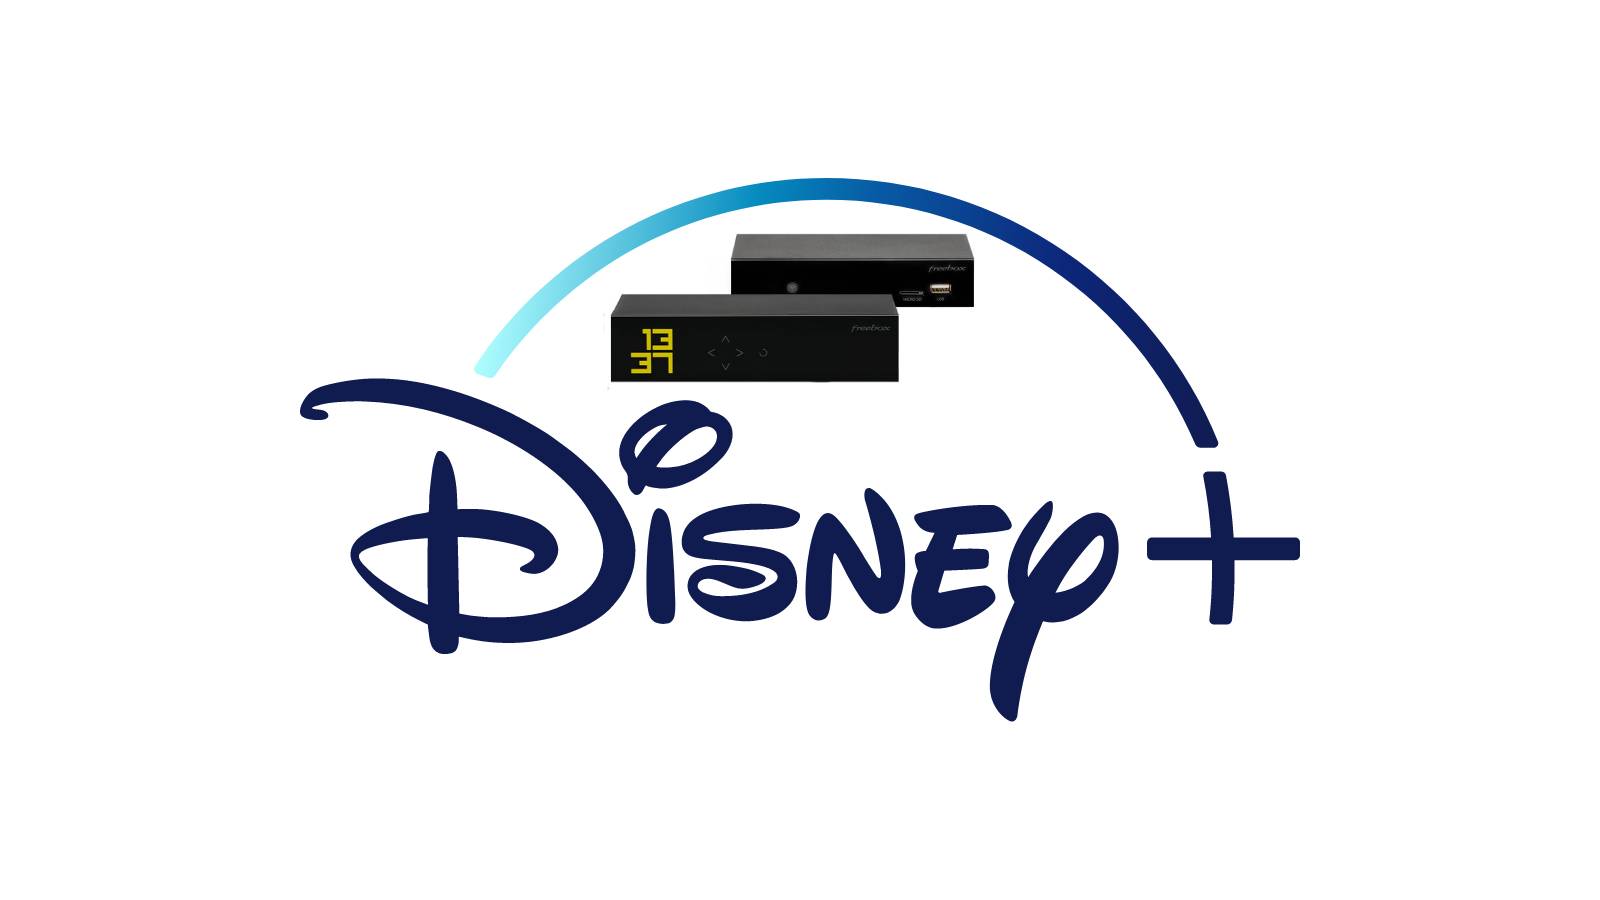 Disney+ offert pour les abonnés Freebox mini 4K pendant 6 mois